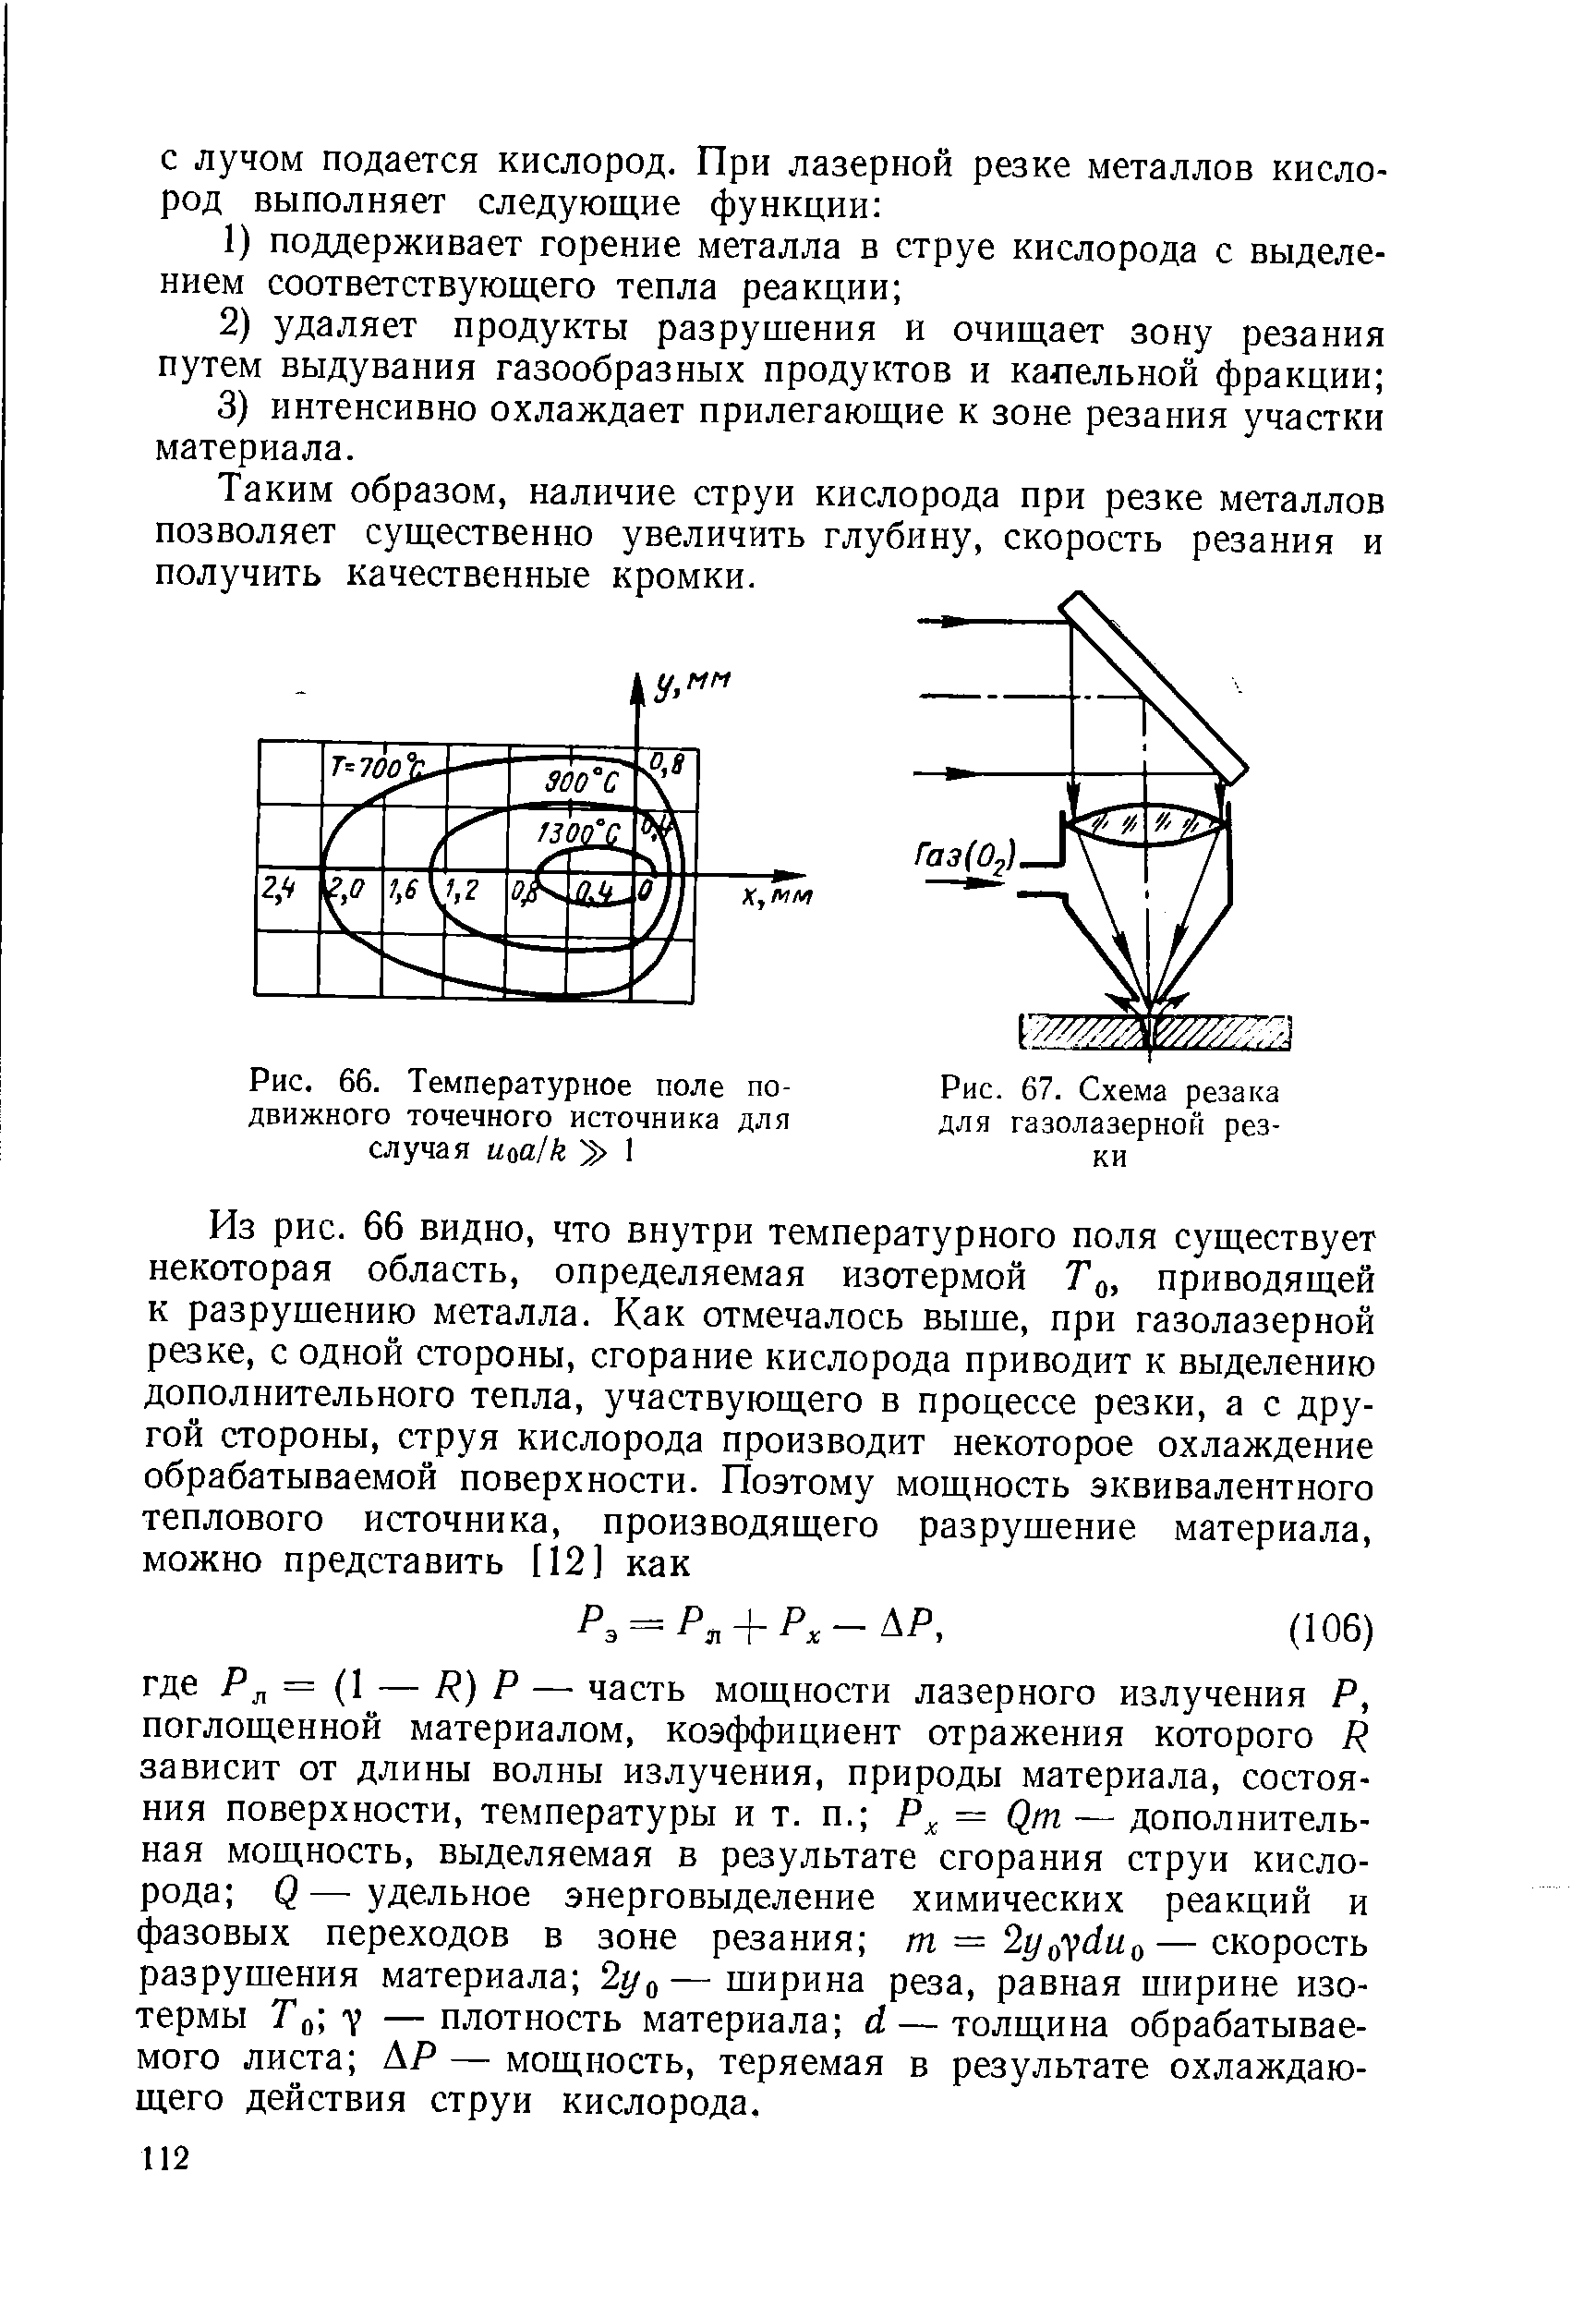 Рис. 67. Схема резака для газолазерной резки
